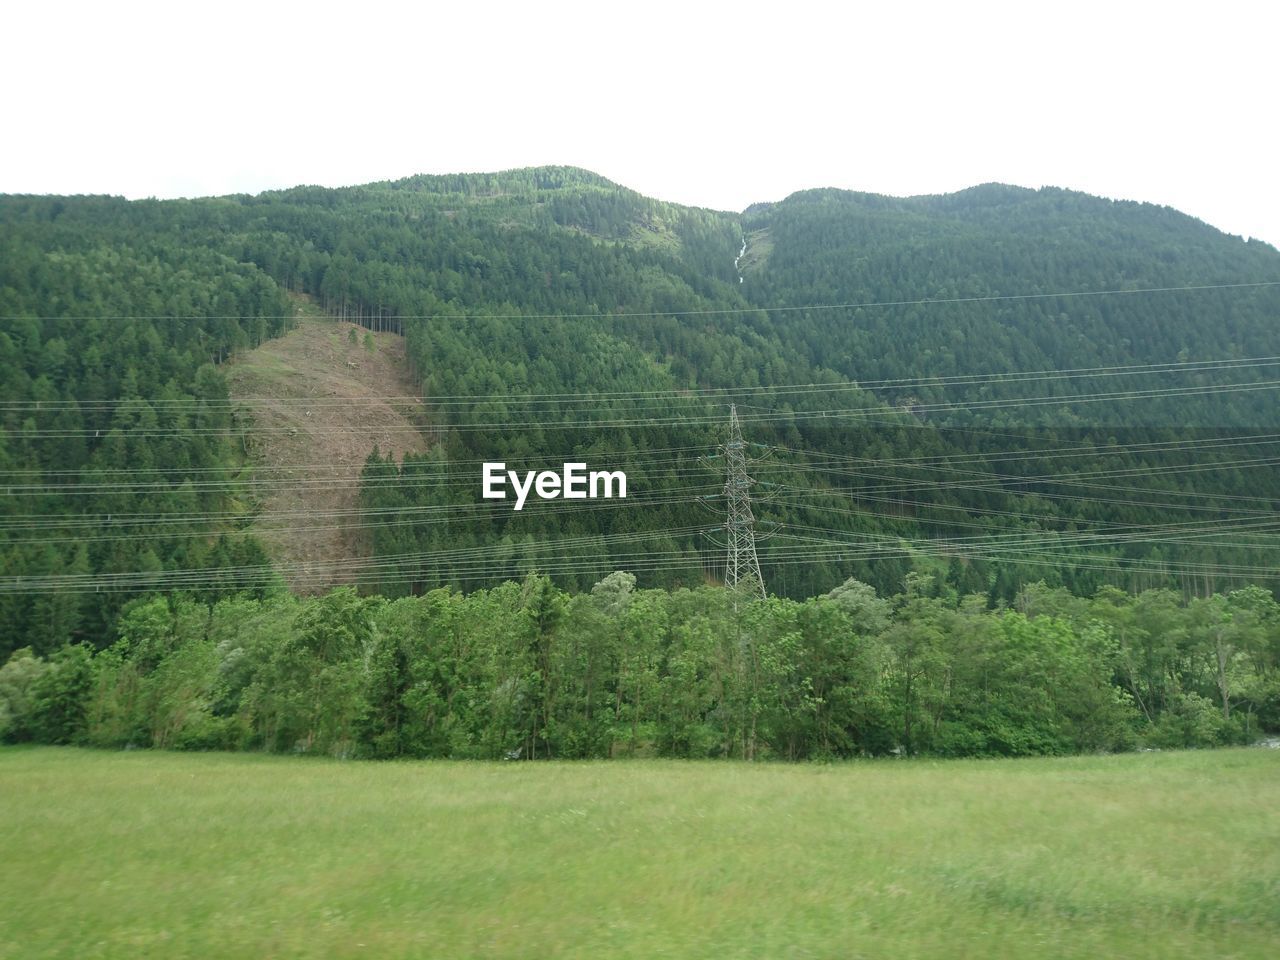 SCENIC VIEW OF GRASSY LANDSCAPE